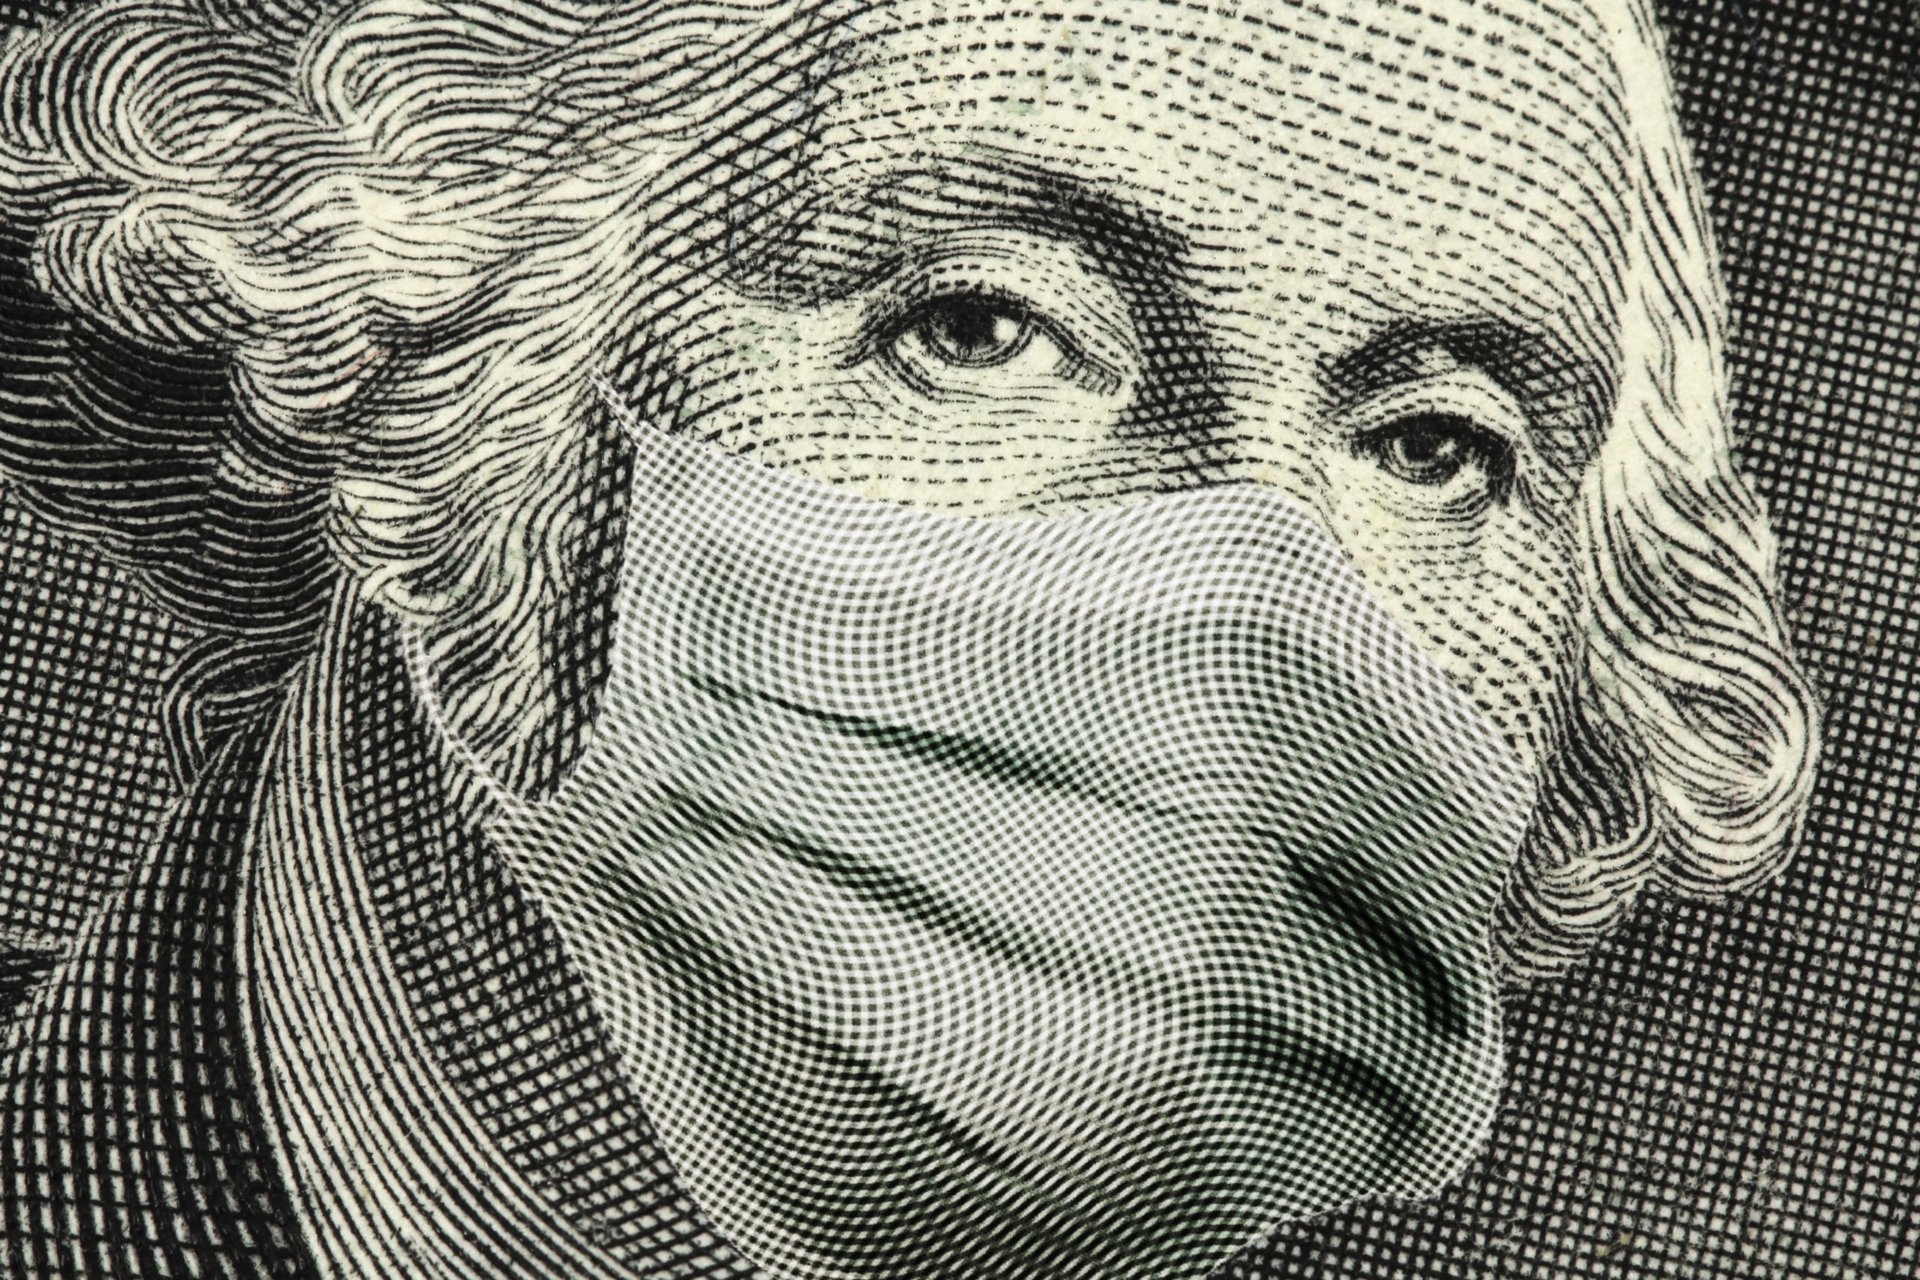 George Washington in a mask on a dollar bill